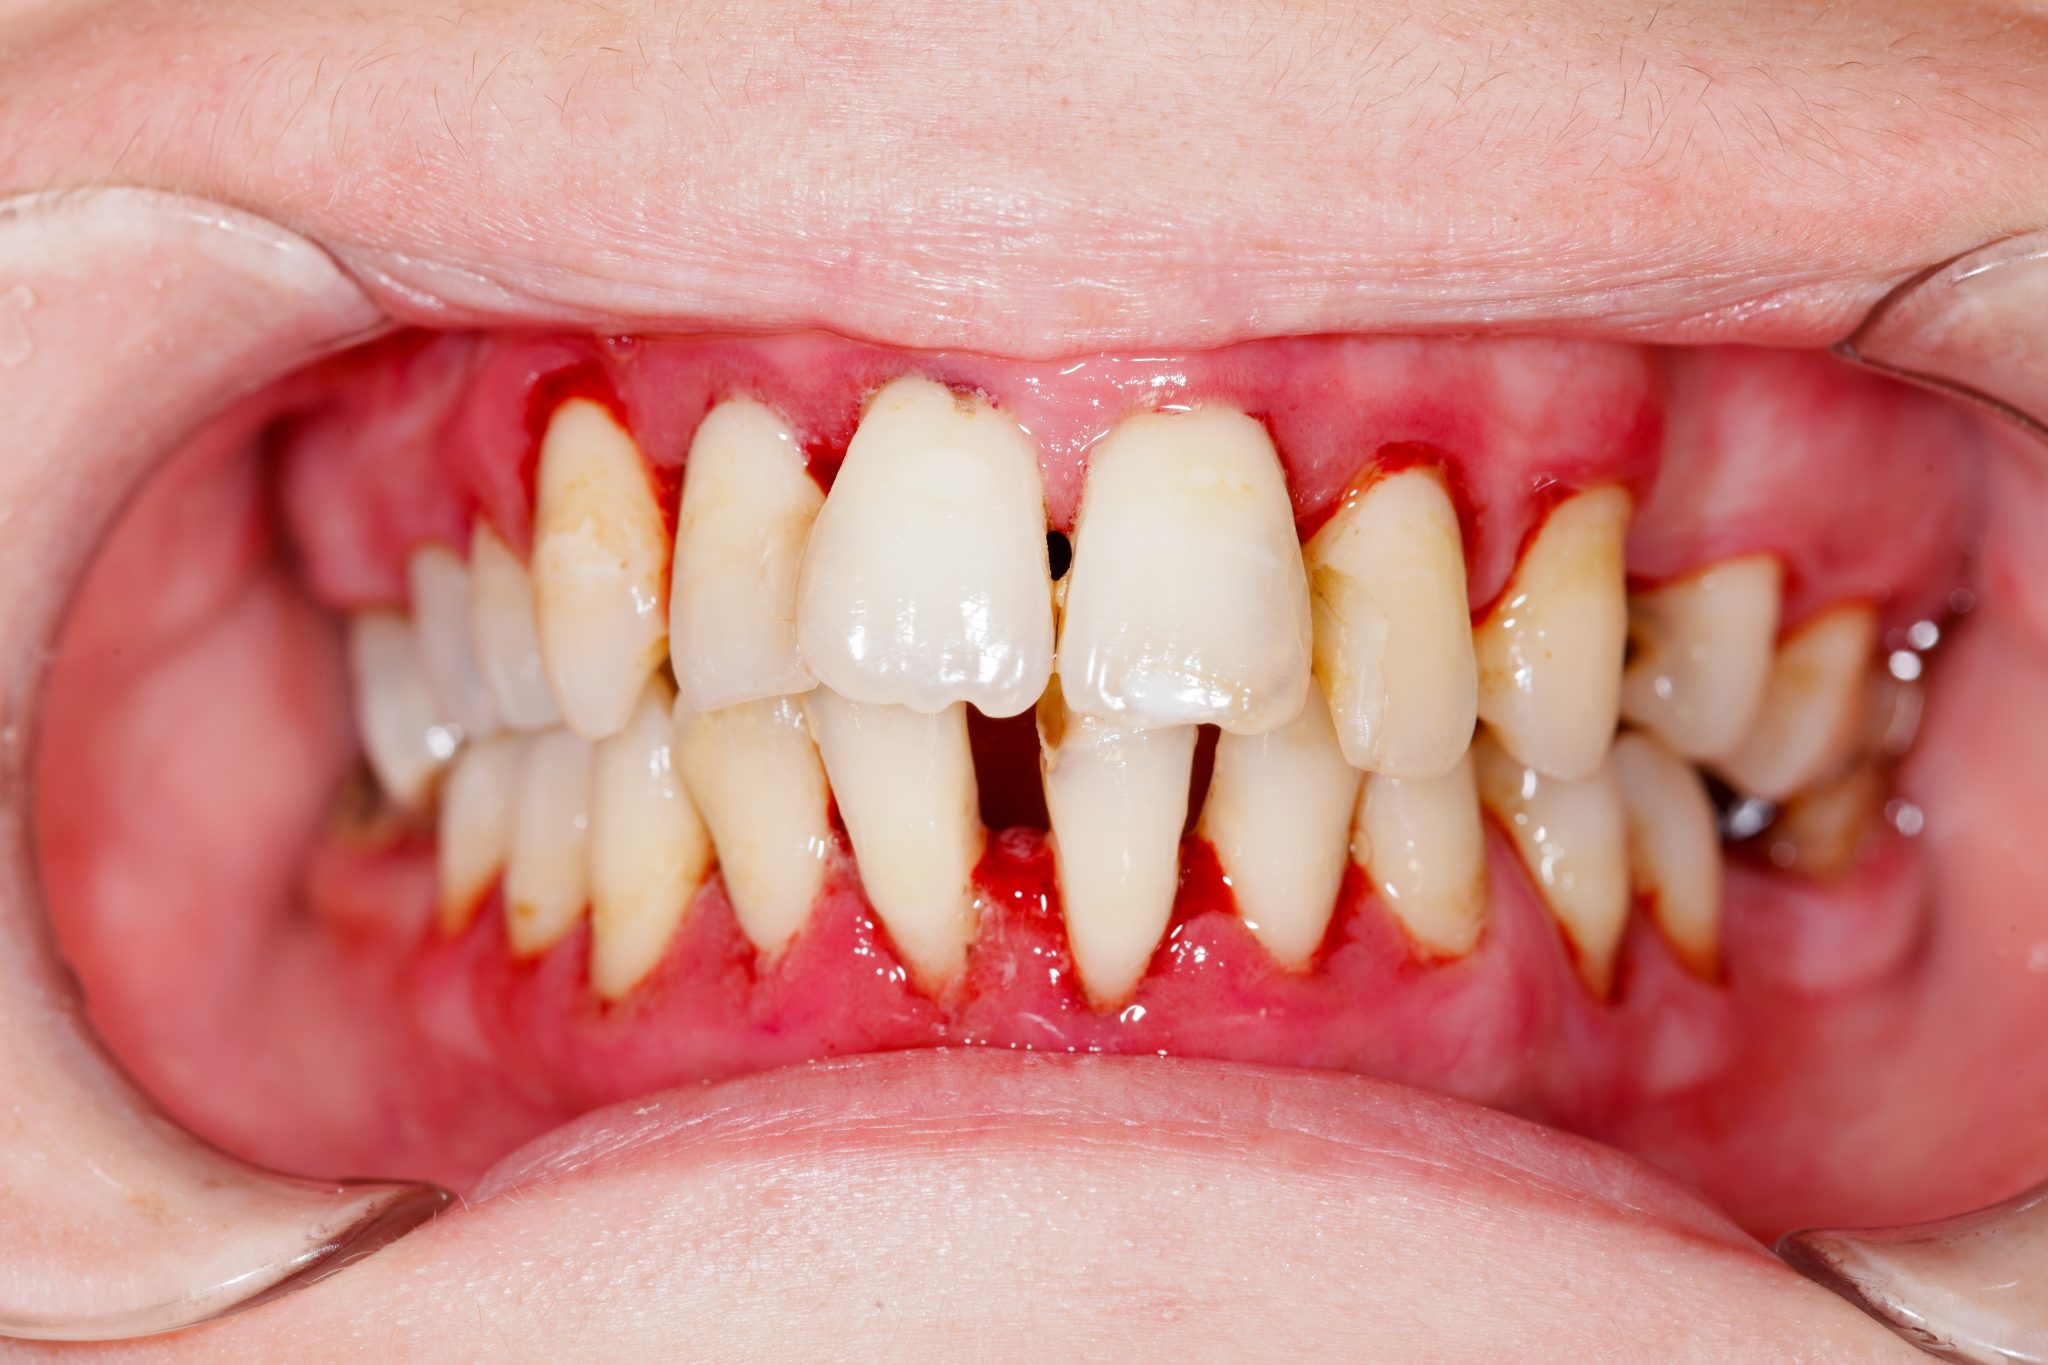 smile health dentist teeth